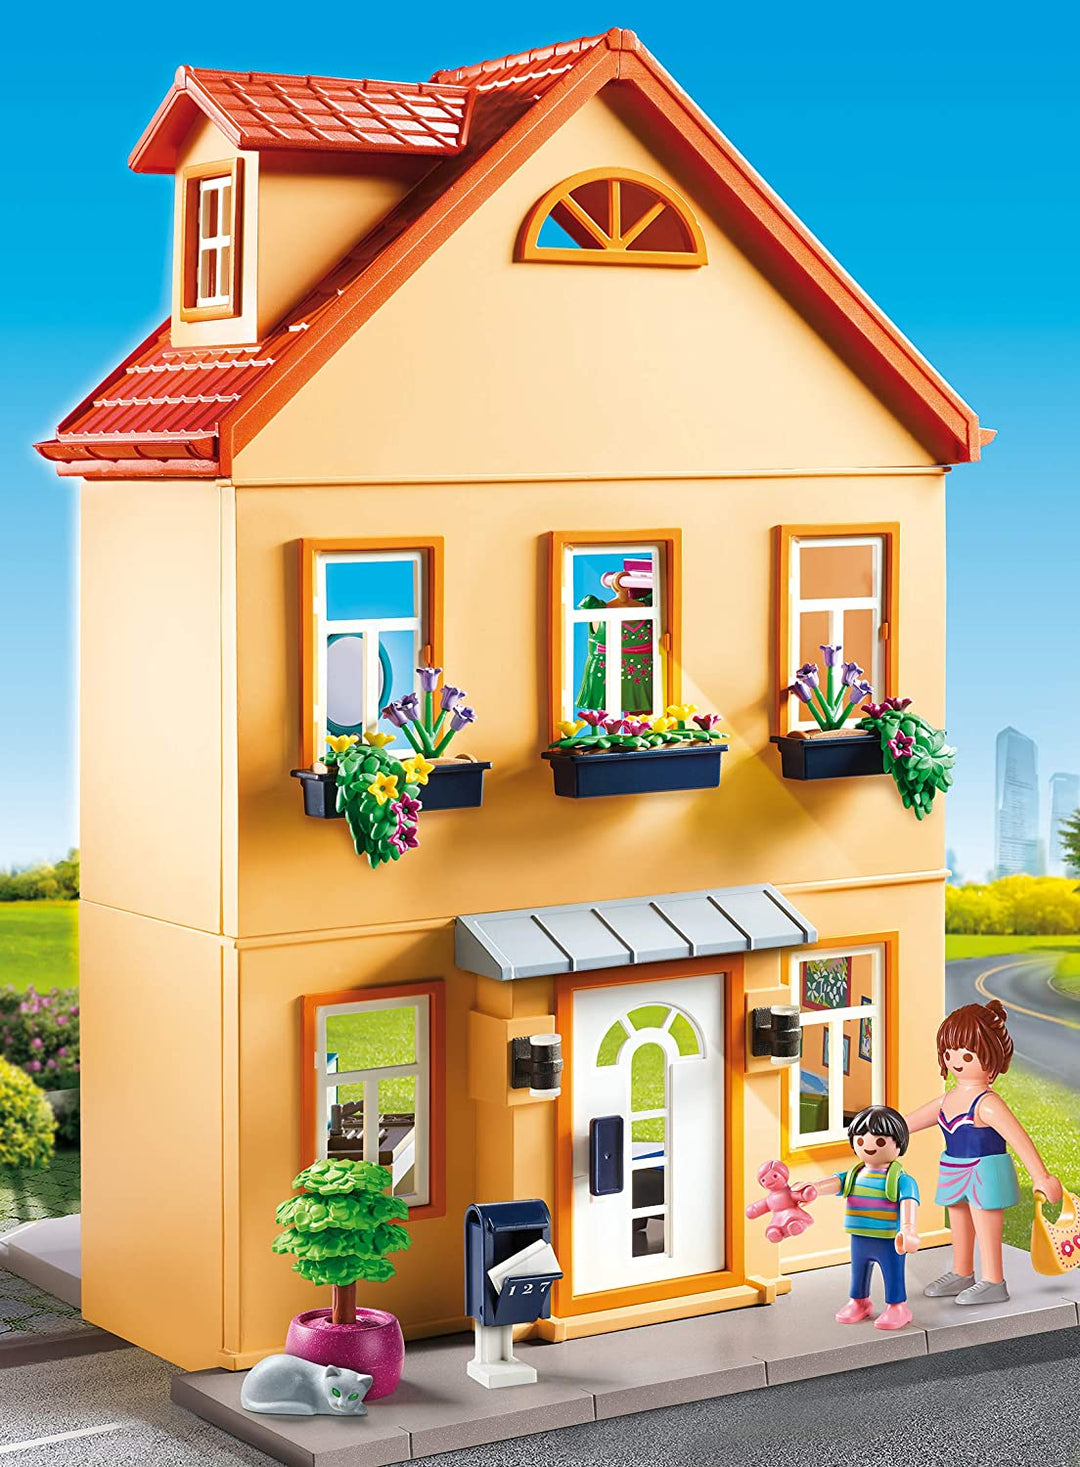 Playmobil 70014 City Life Mi pequeña casa de pueblo con muebles